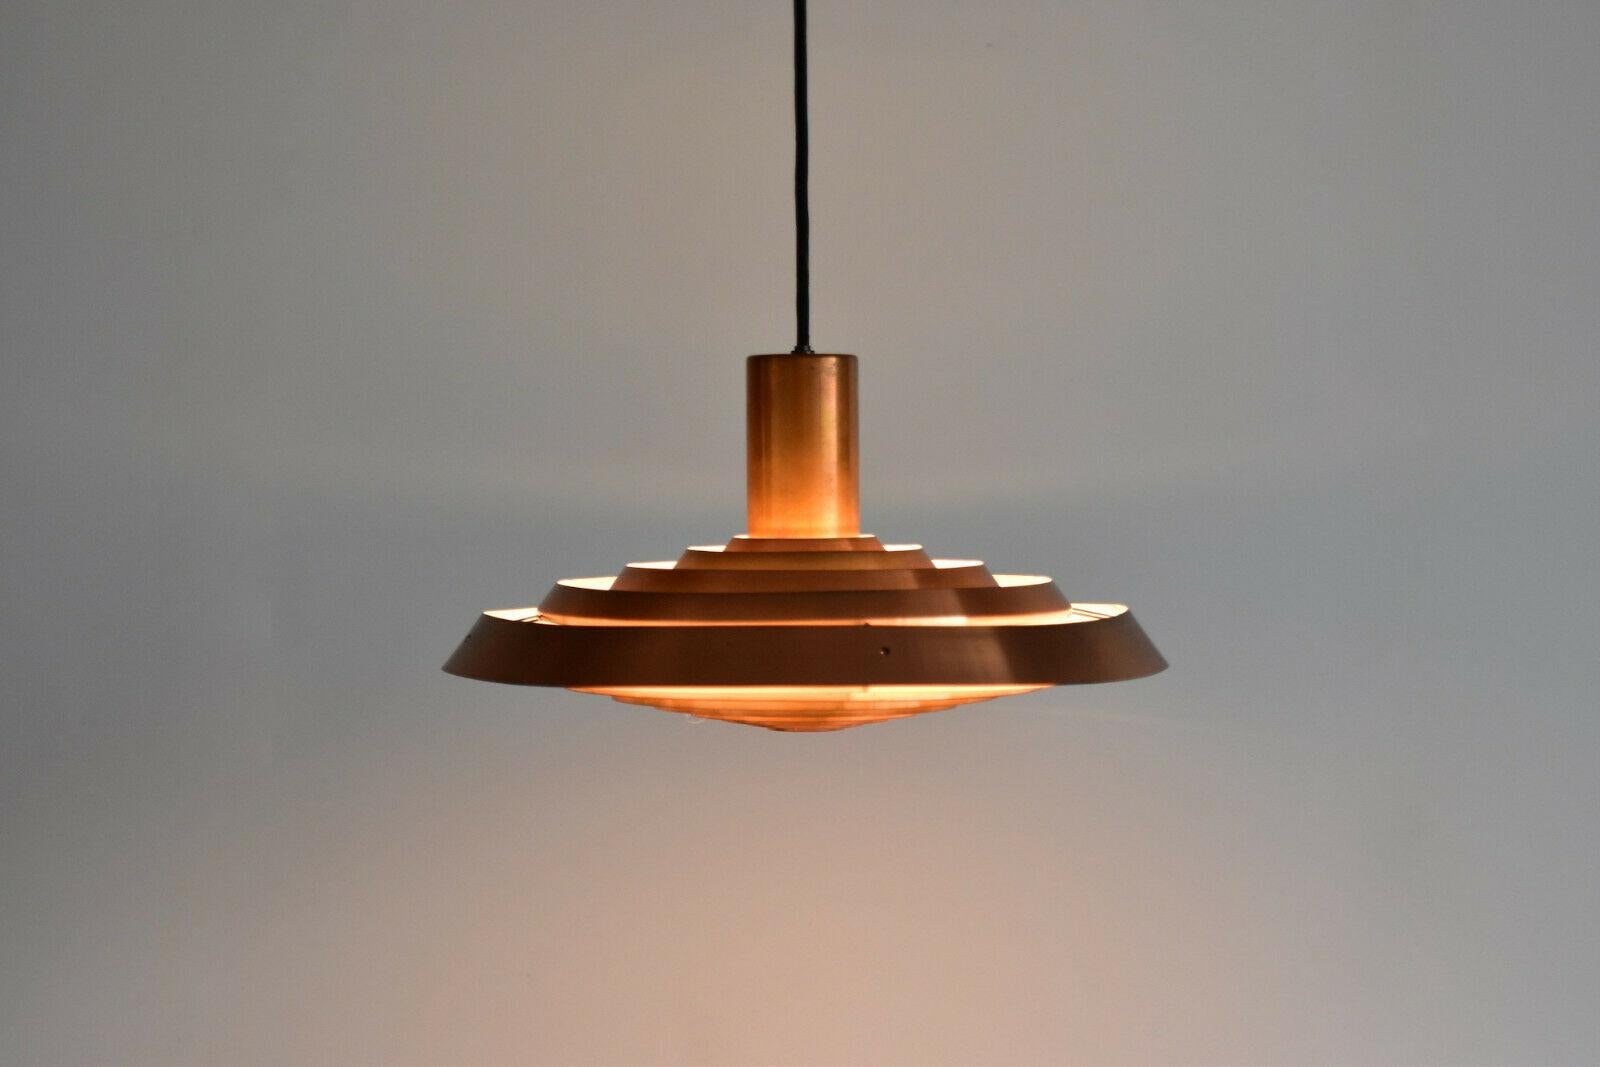 Copper Poul Henningsen PH Tallerken Pendant Lamp by Louis Poulsen Denmark 1